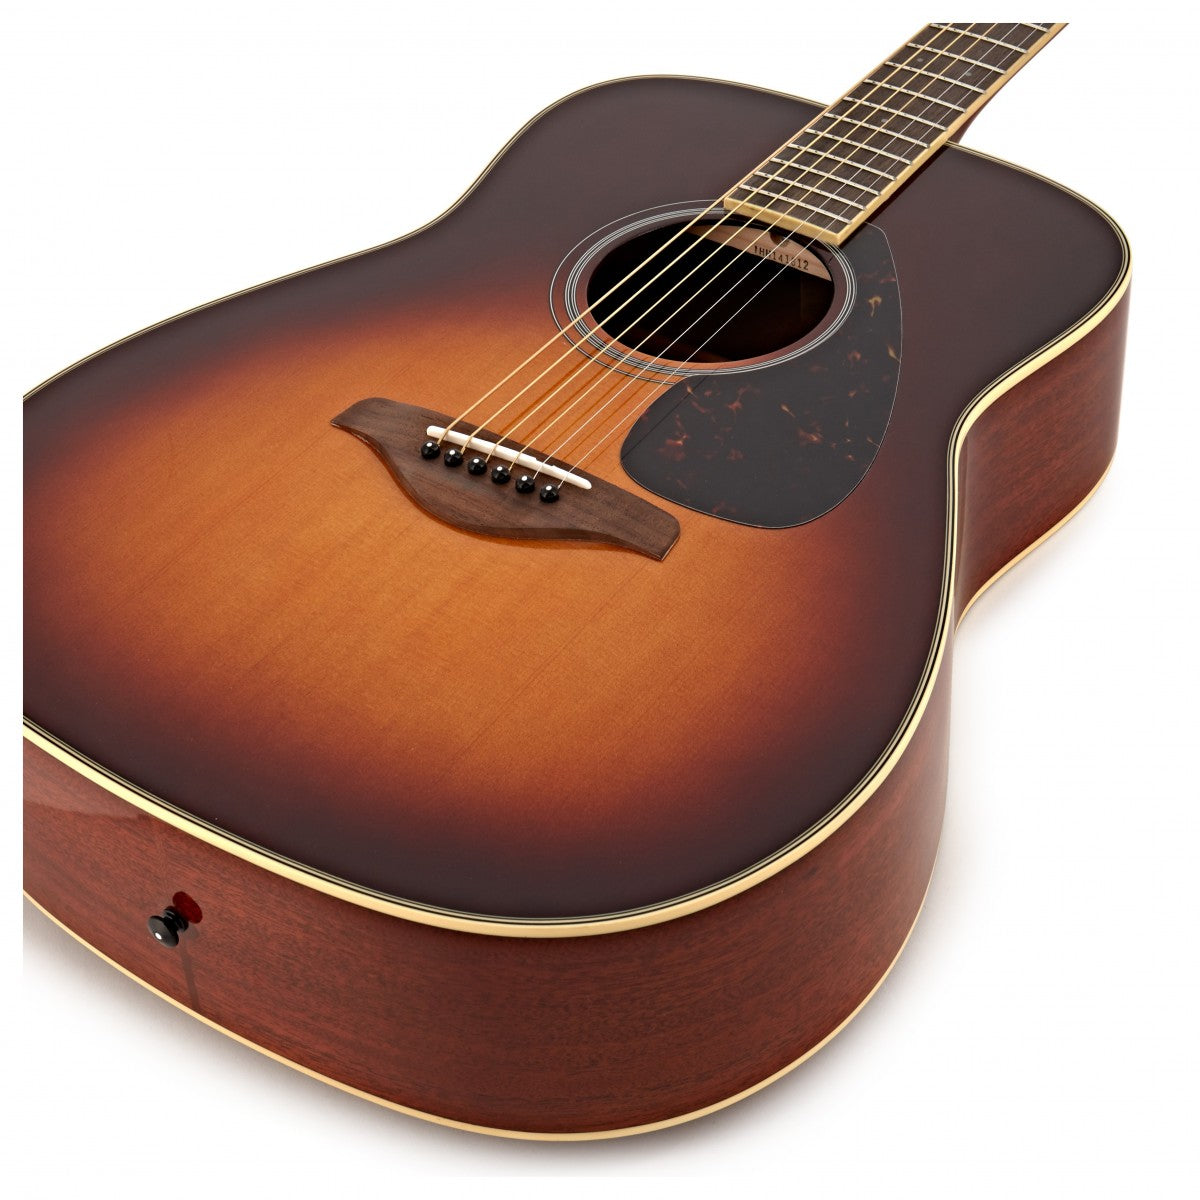 Đàn Guitar Yamaha FG820 Acoustic